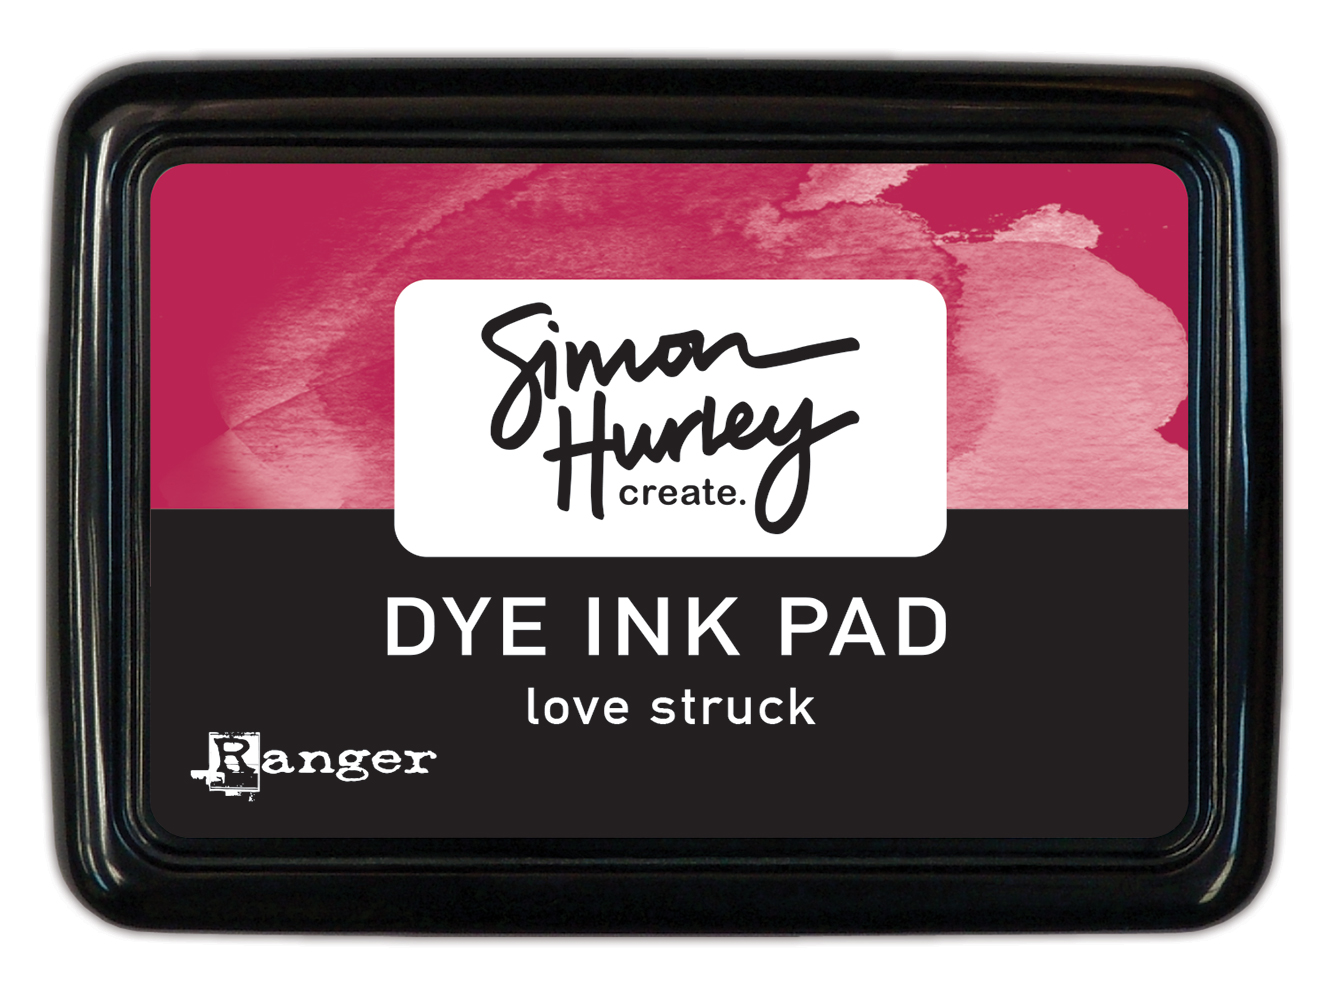 Ranger Simon Hurley Dye Ink Pad Love Struck